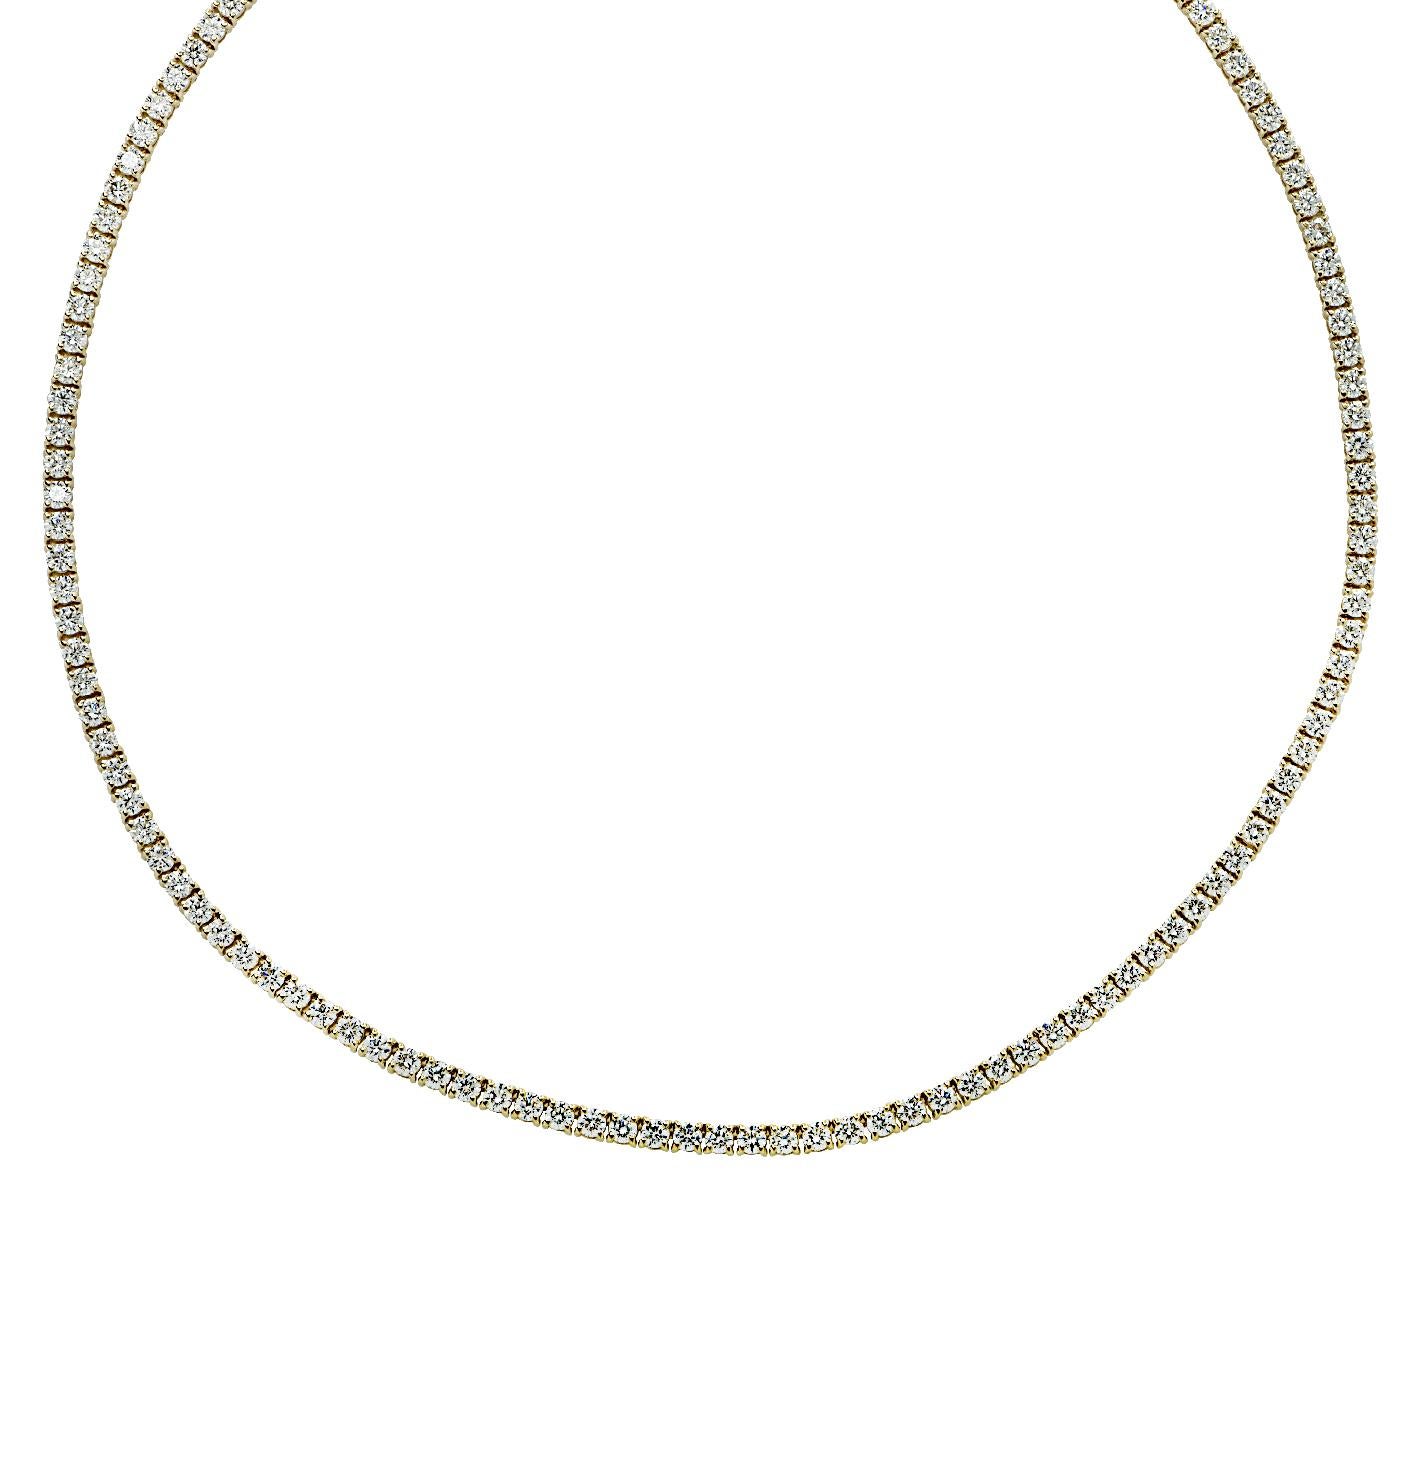 Vivid Diamonds 6.37 Carat Straight Line Diamond Tennis Necklace In New Condition For Sale In Miami, FL